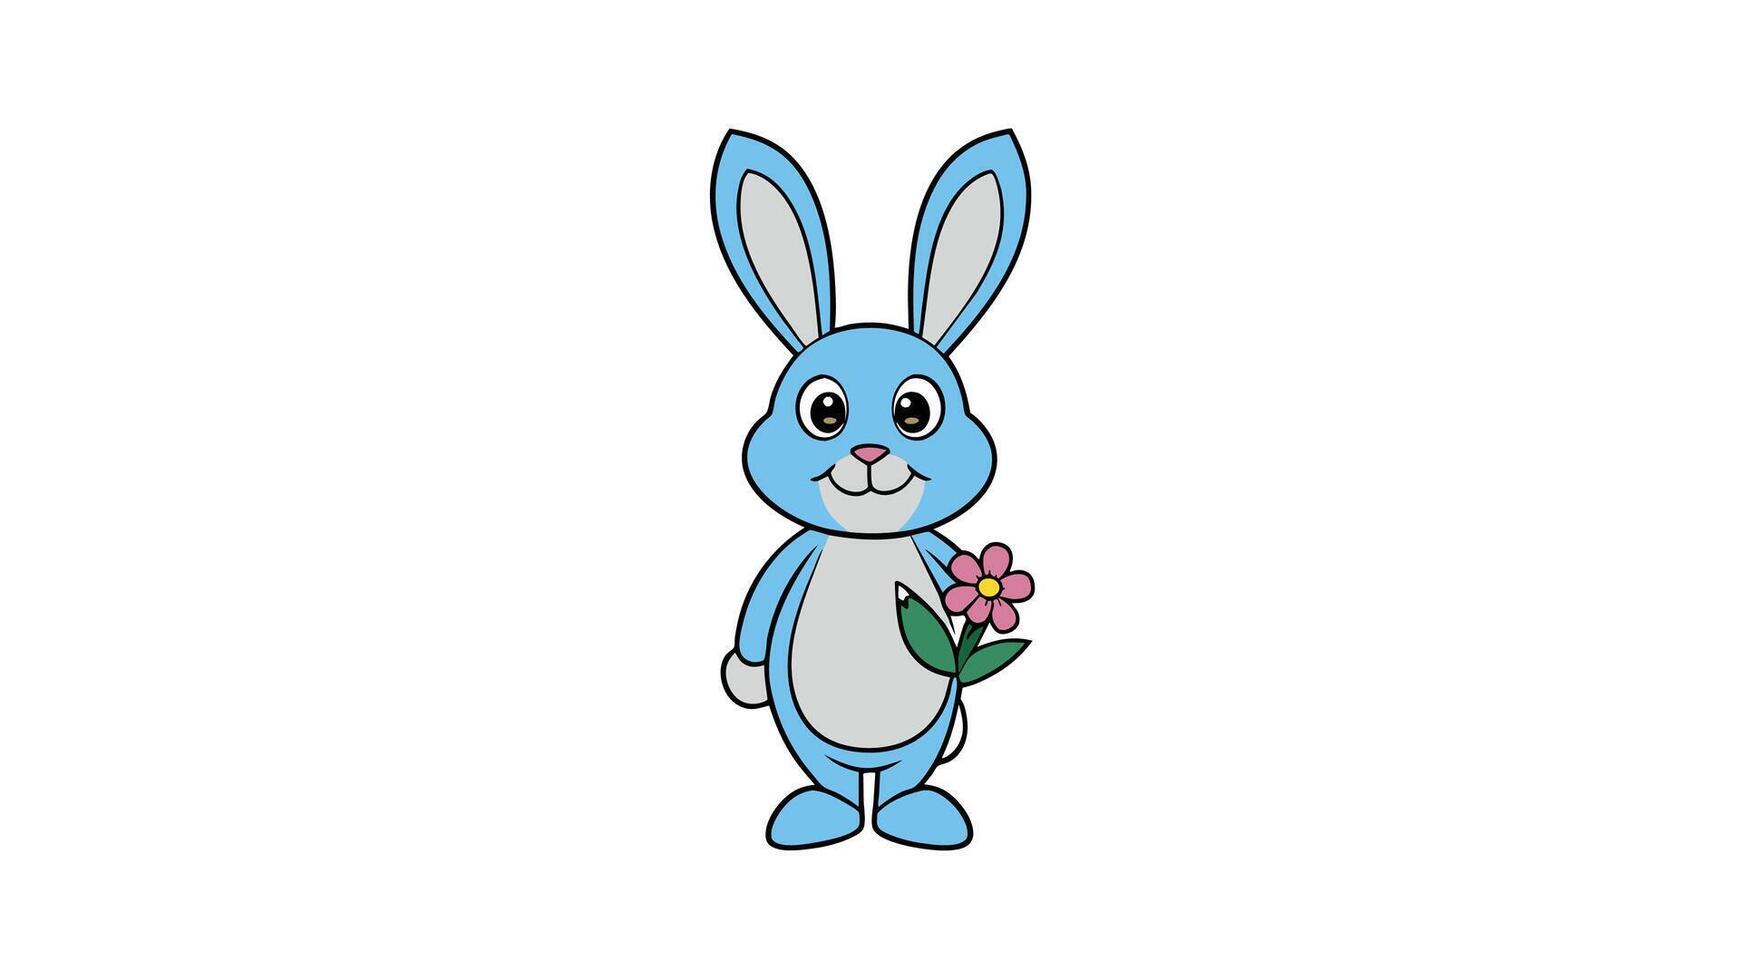 Pasen konijn Holding bloem charmant vector illustratie voor feestelijk ontwerpen